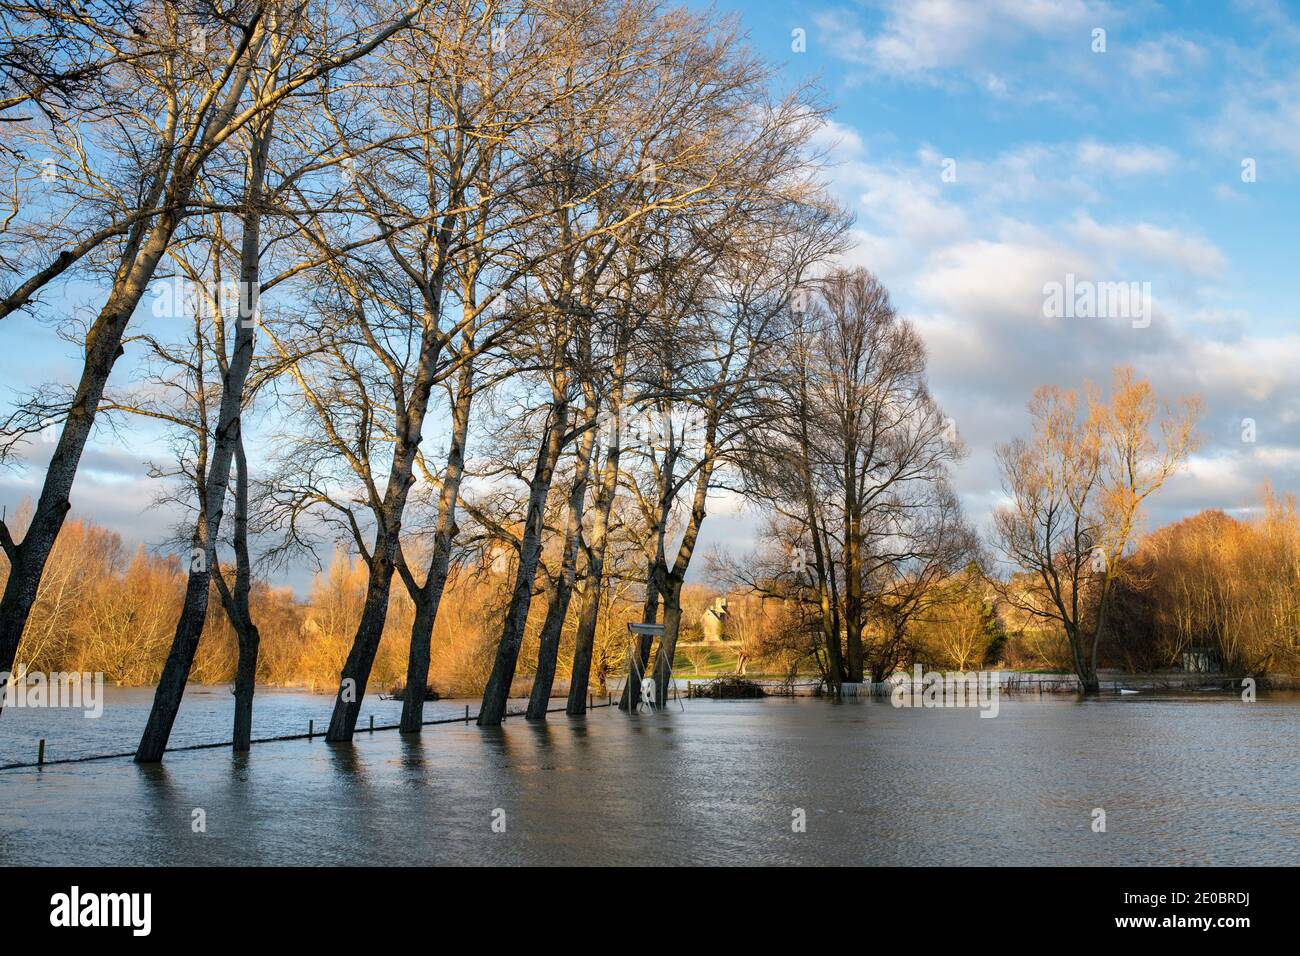 Bäume am Rande des Cricket-Platzes, der am heiligabend 2020 vom Fluss windrush überschwemmt wurde. Swinbrook, Gloucestershire, England Stockfoto